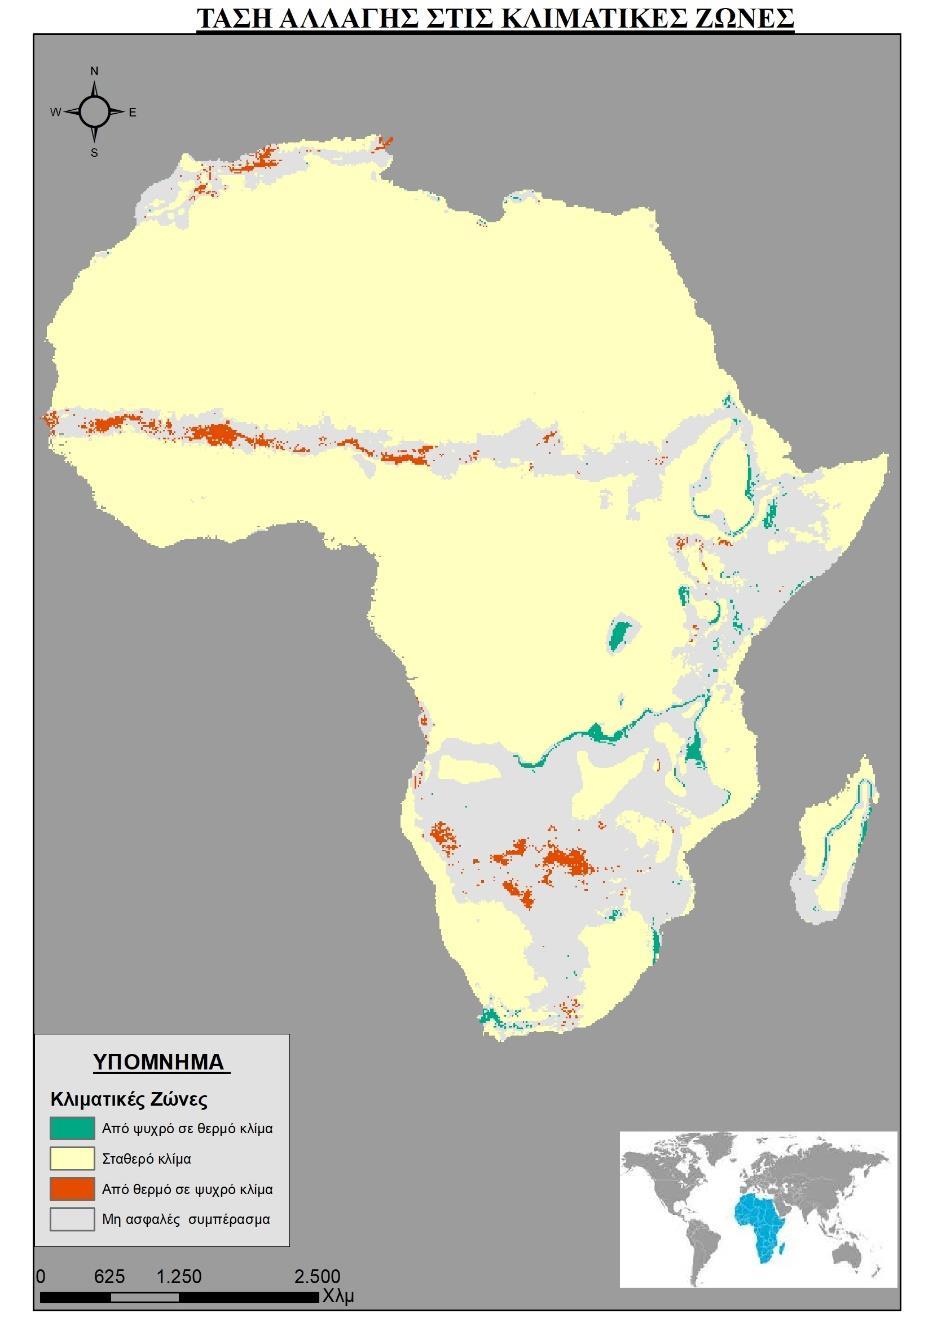 Χάρτης 4: Τάση Αλλαγής στις Κλιματικές Ζώνες της Αφρικής ΣΥΜΠΕΡΑΣΜΑΤΑ Κλιματικές Ζώνες Παρατηρώντας τον χάρτη 1 διακρίνεται εύκολα ότι τα ερημικά-ξηρά κλίματα βρίσκονται σε πληθώρα στην βόρεια Αφρική